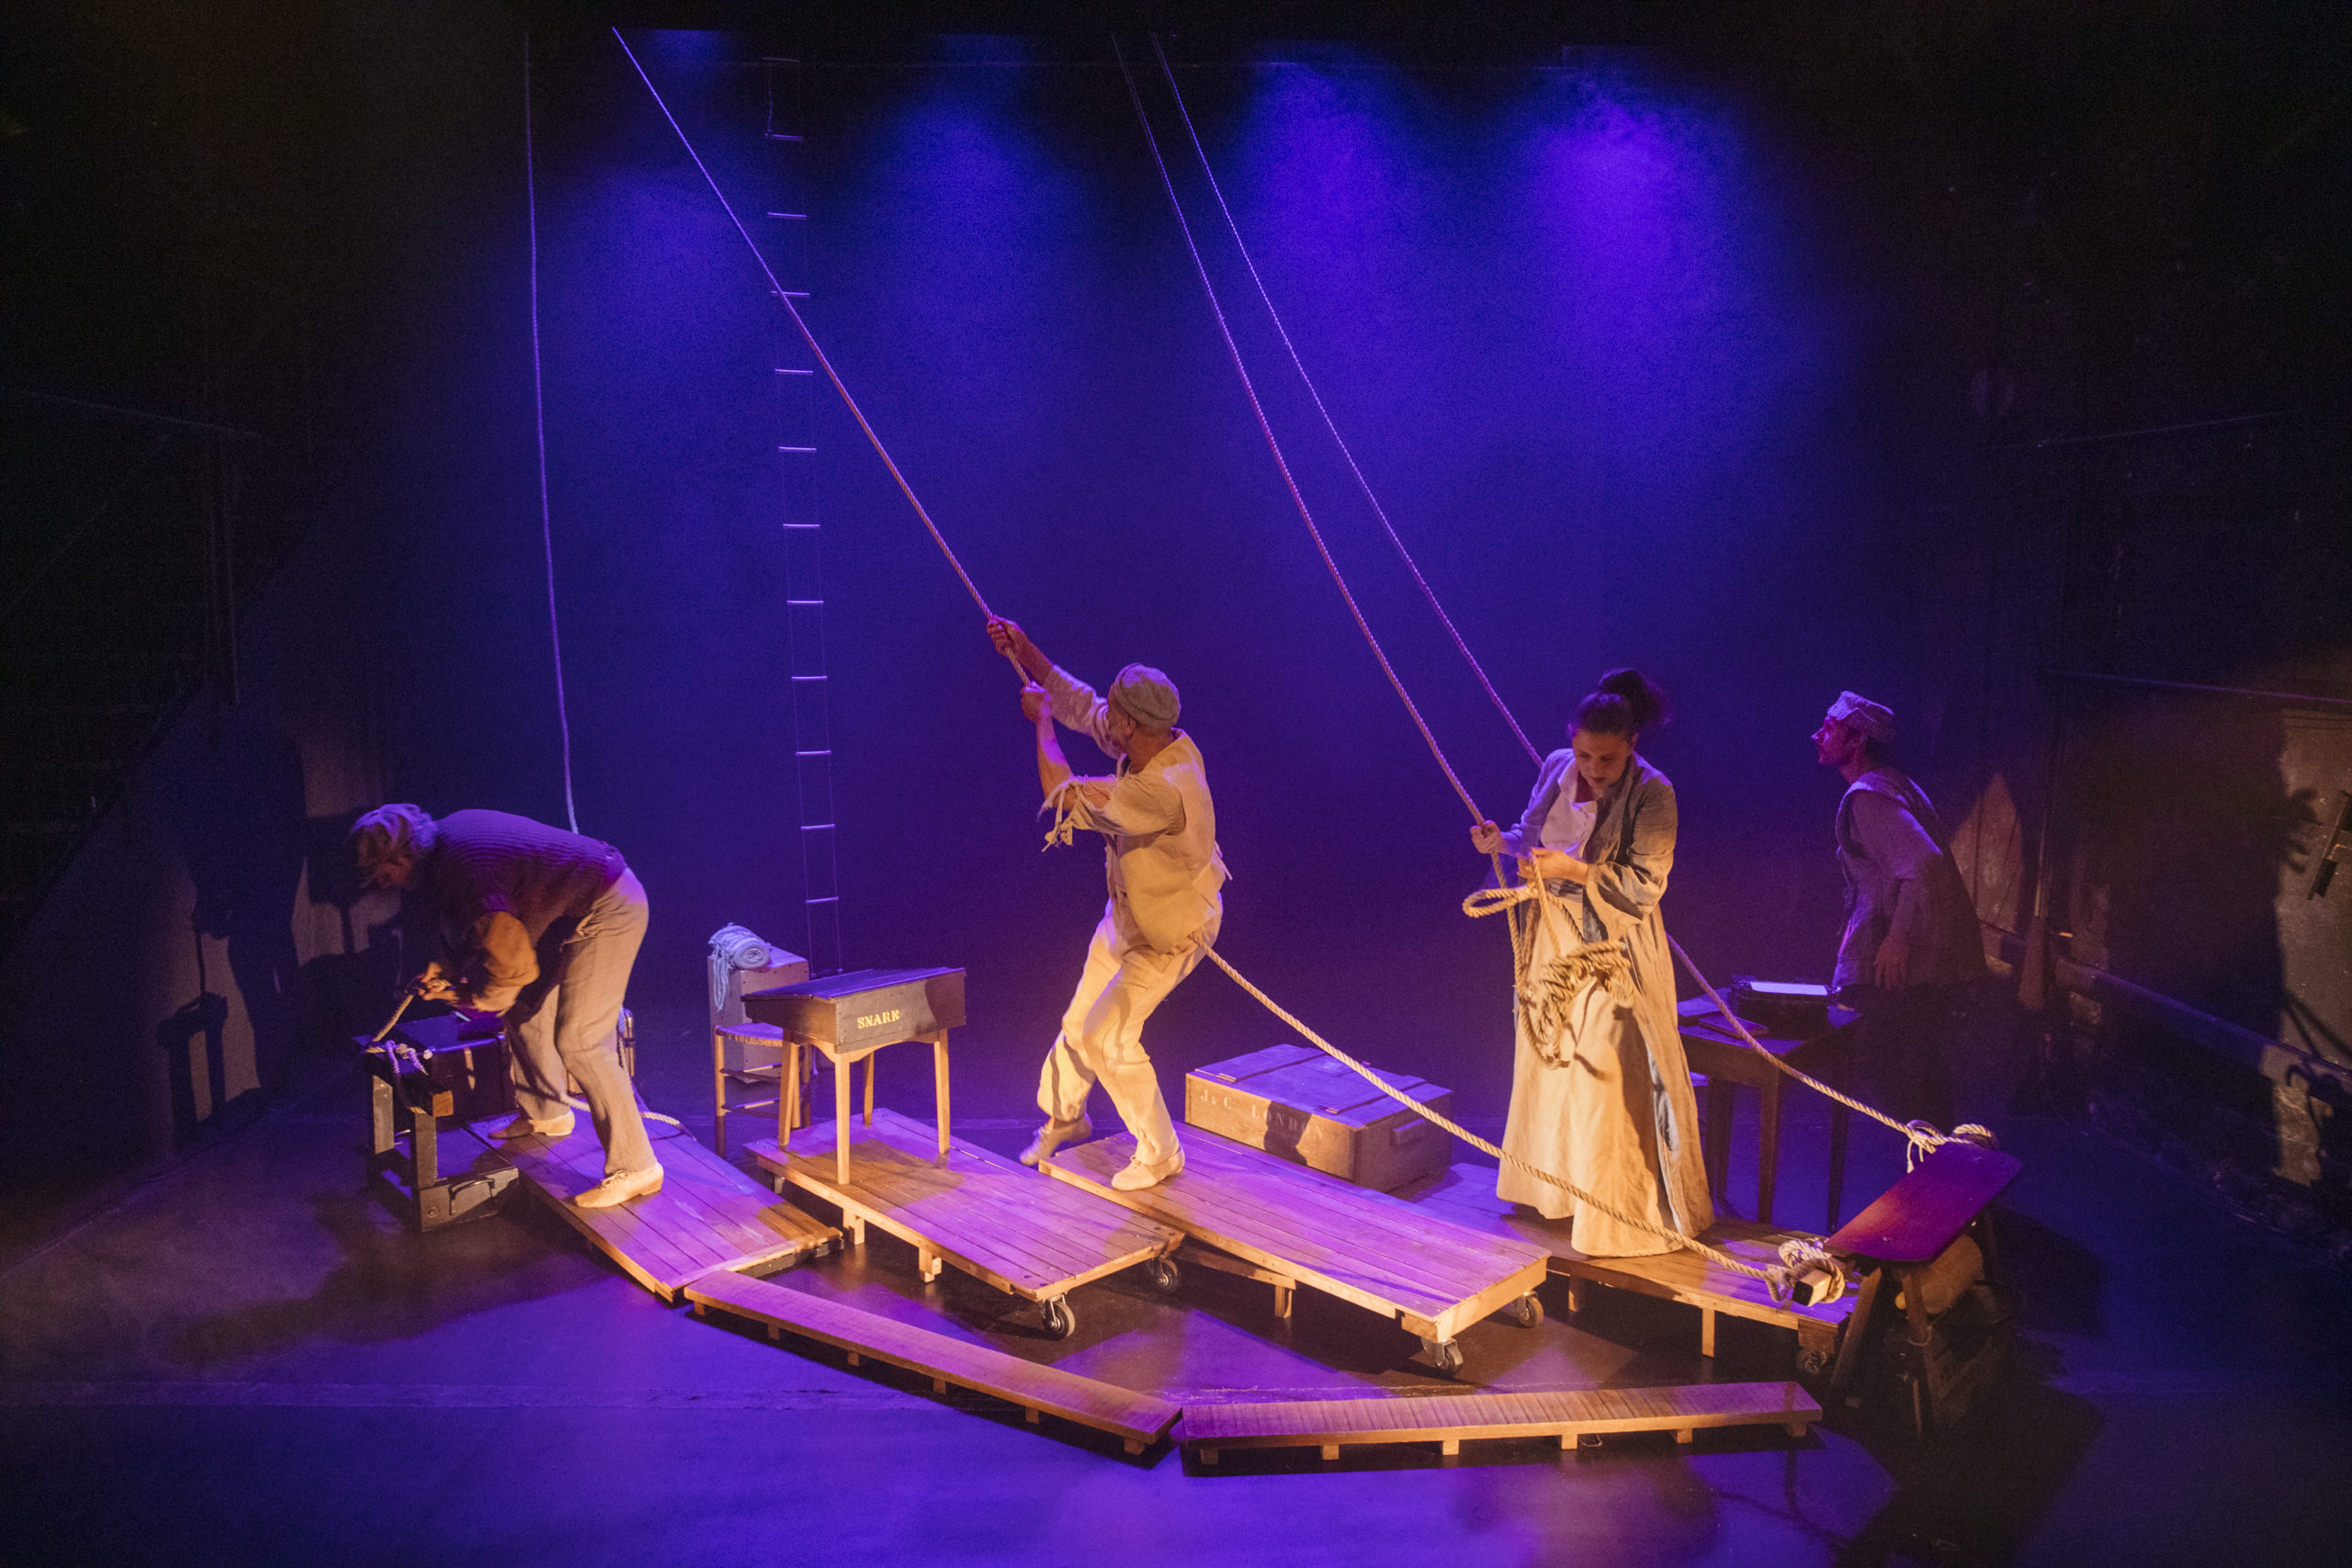 Théâtre : « Martin Eden » de Jack London, un récit spectaculaire et merveilleux raconté par La Compagnie Les Ames Libres